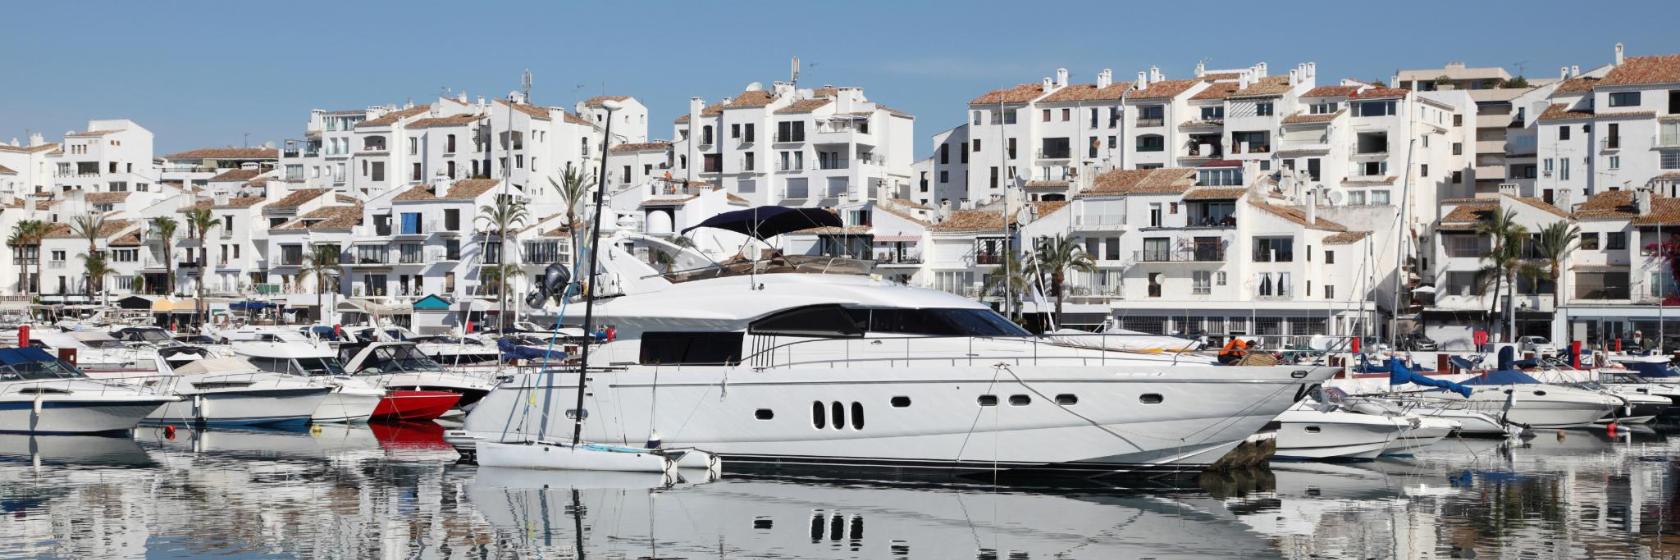 The 10 best hotels in Puerto Banus, Marbella, Spain